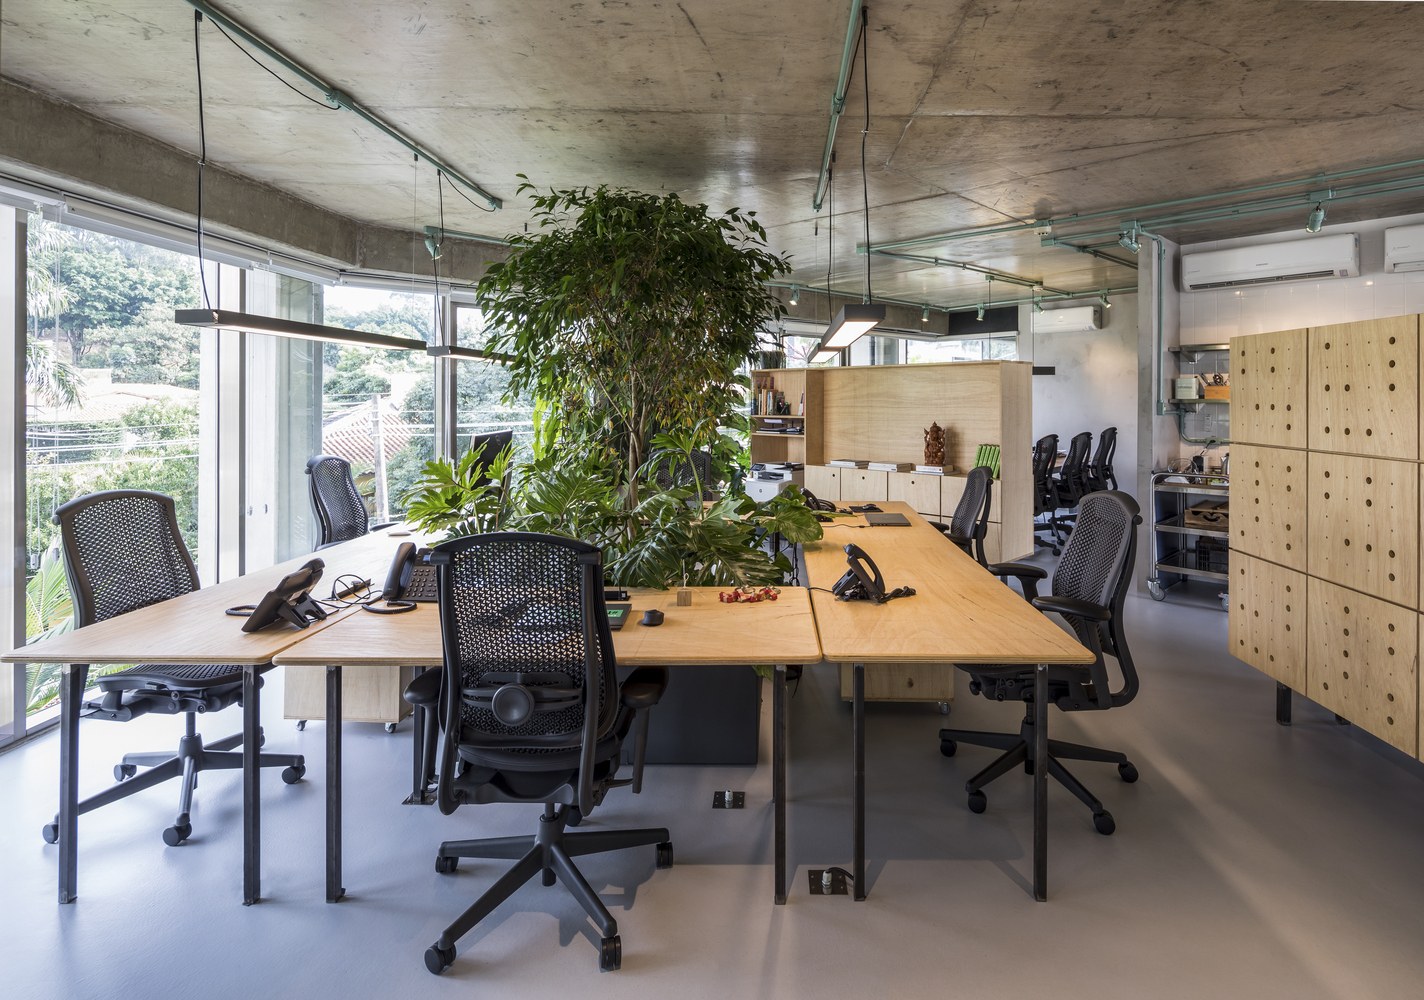 Tìm hiểu thế nào văn phòng xanh – Có vai trò thế nào trong kiến trúc